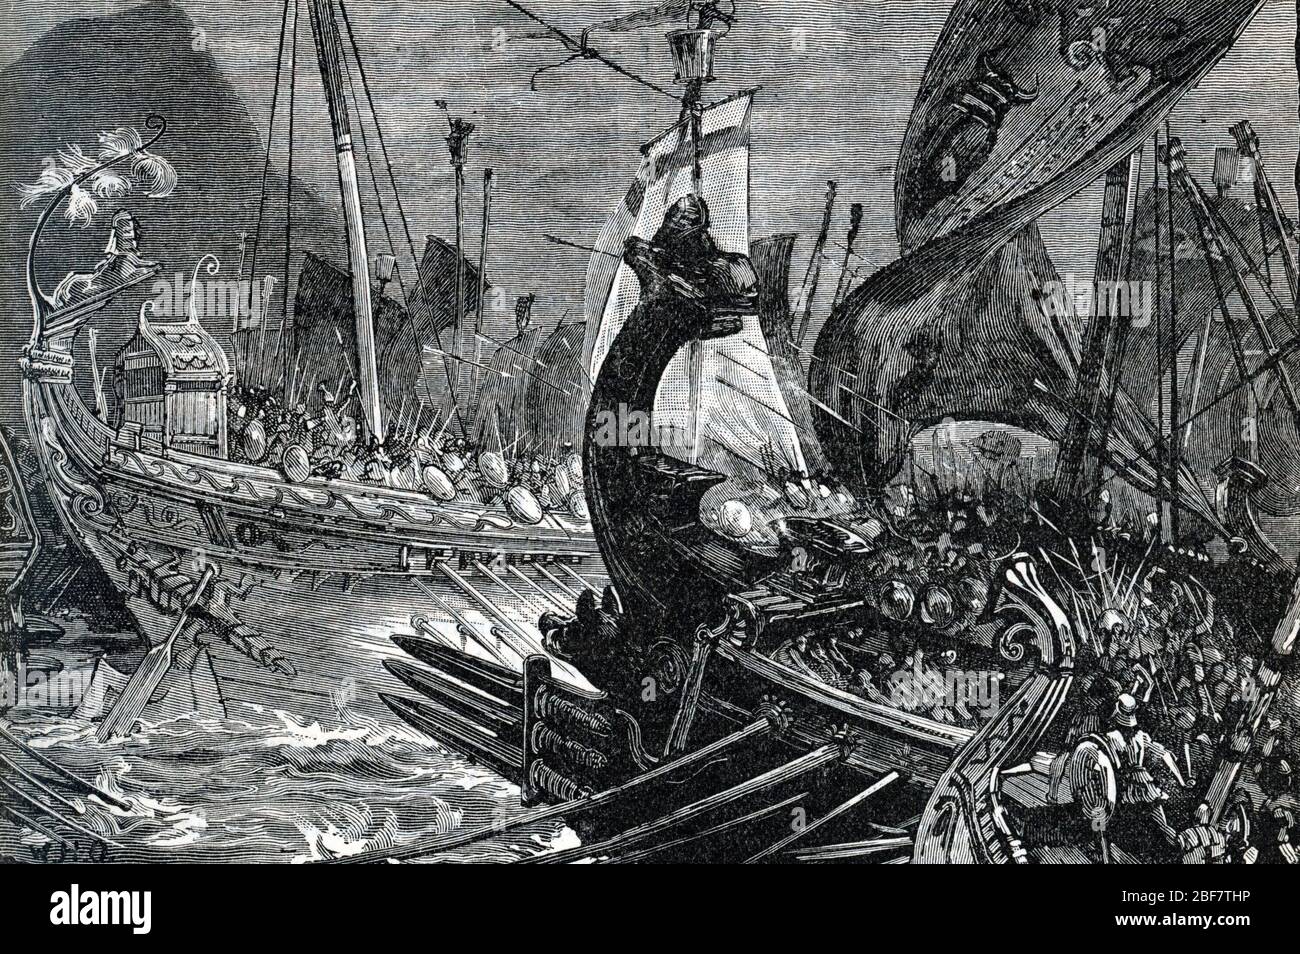 'Representation de la bataille de Salamine en 480 avant JC qui opposa flotte grecque menee par Eurybiade et Themistocle a la flotte perse de Xerxes Ie Stock Photo